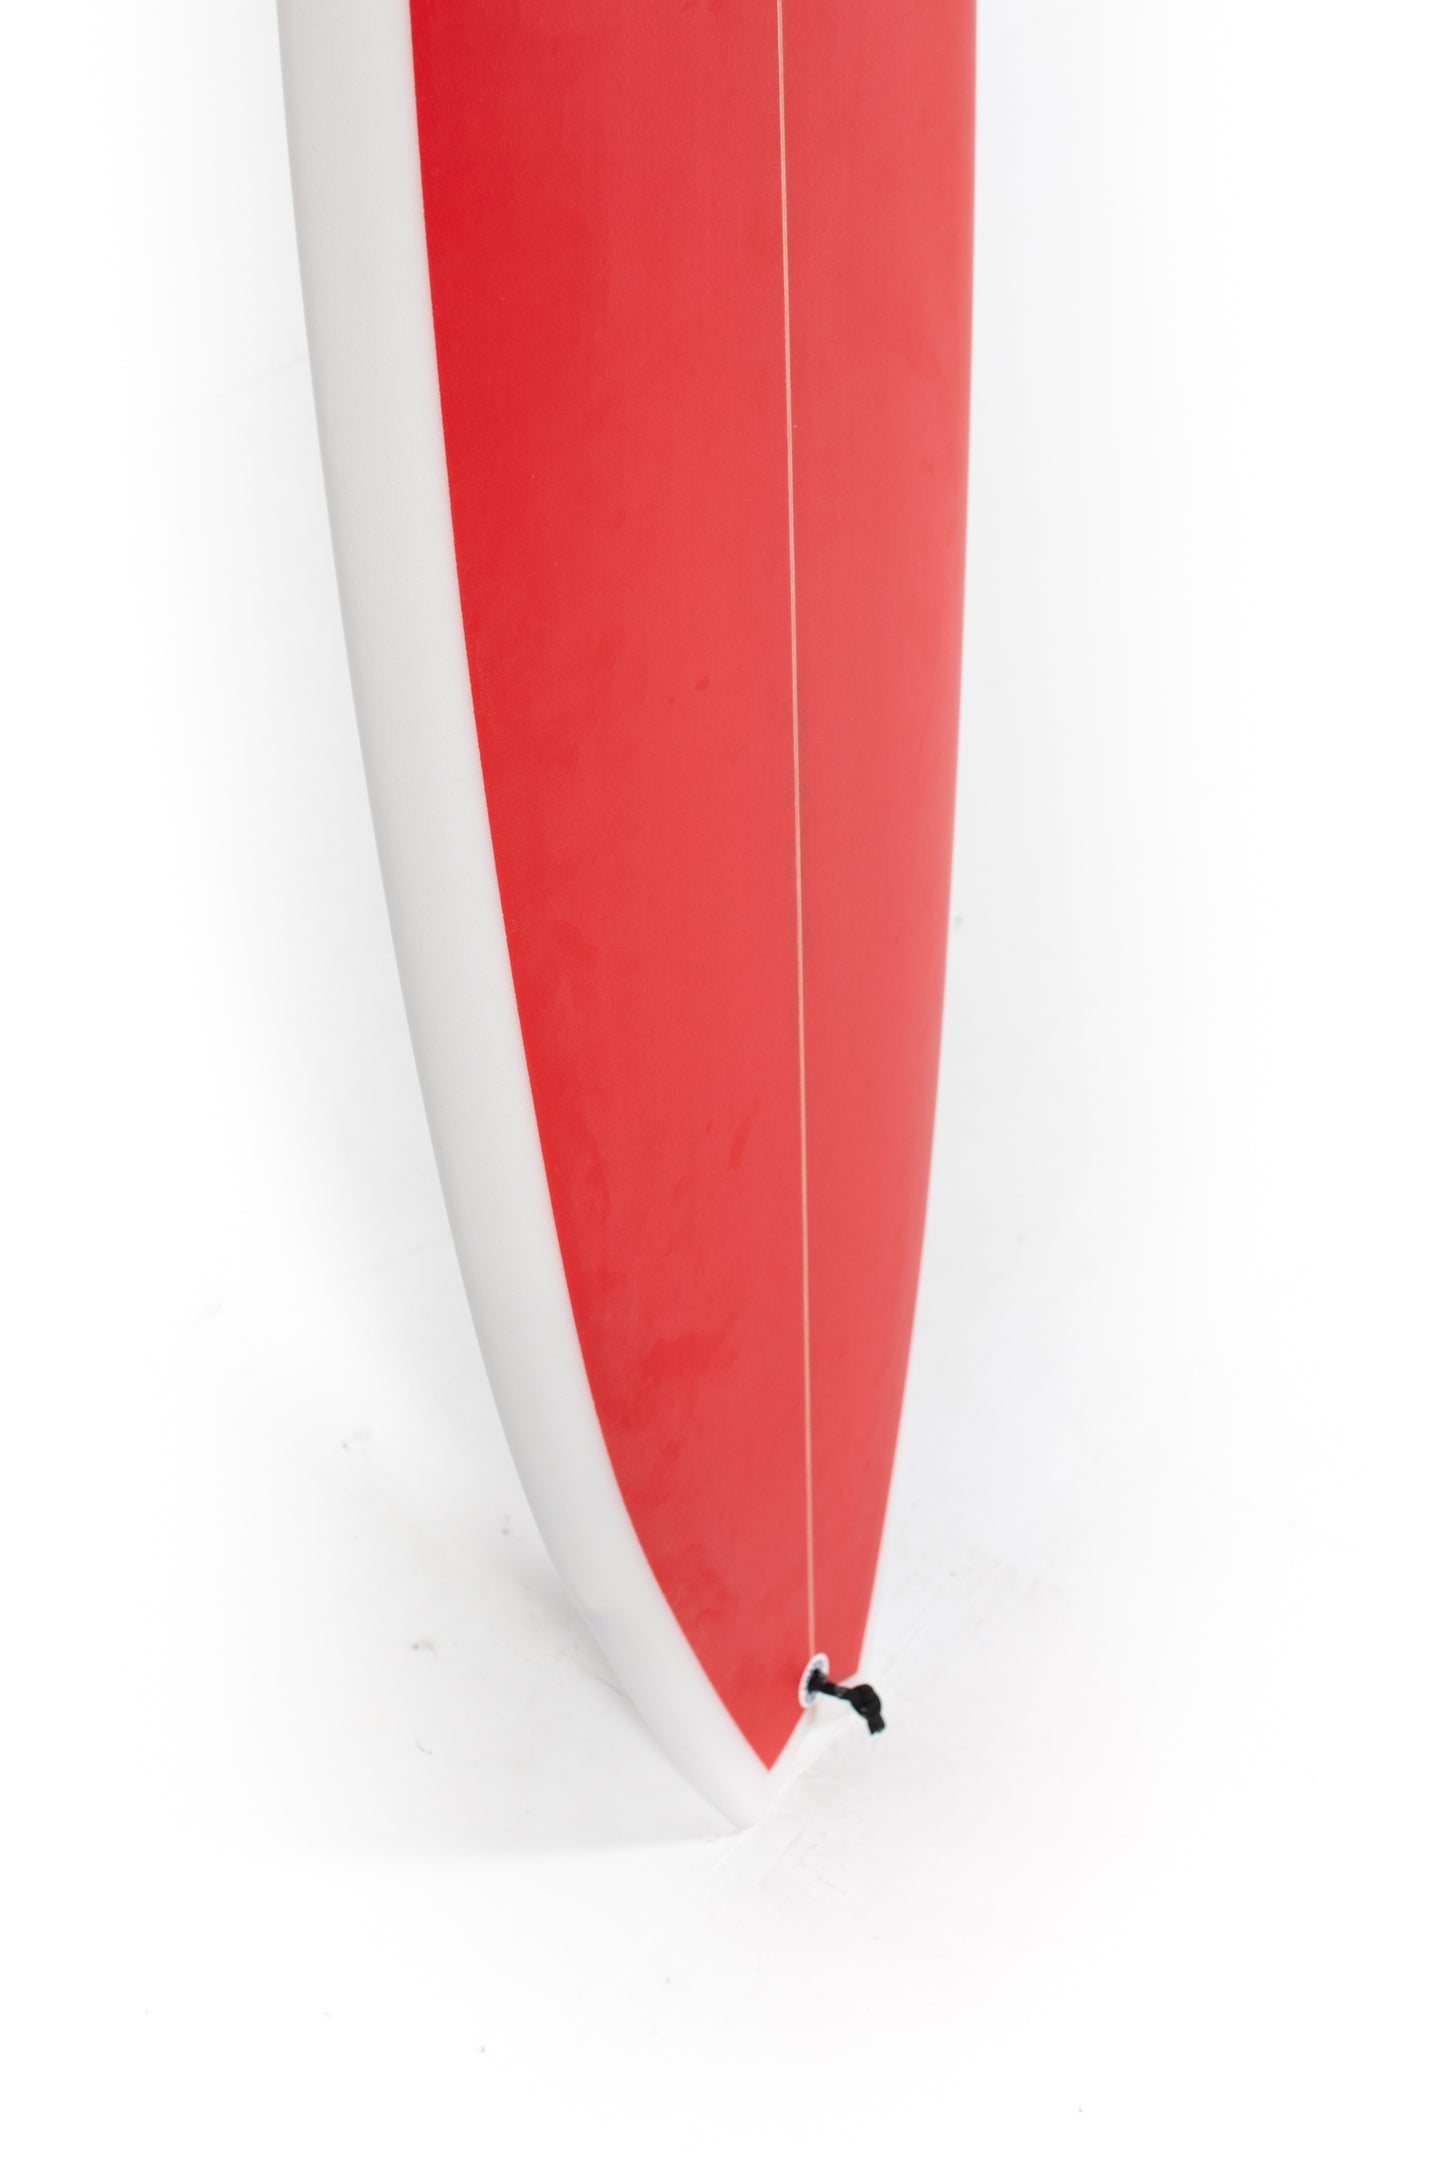 
                  
                    Pukas Surf Shop - Channel Islands - G-Skate by Al Merrick - 5'8" x 19 1/2 x 2 3/4 - 34.1L - CI227671
                  
                